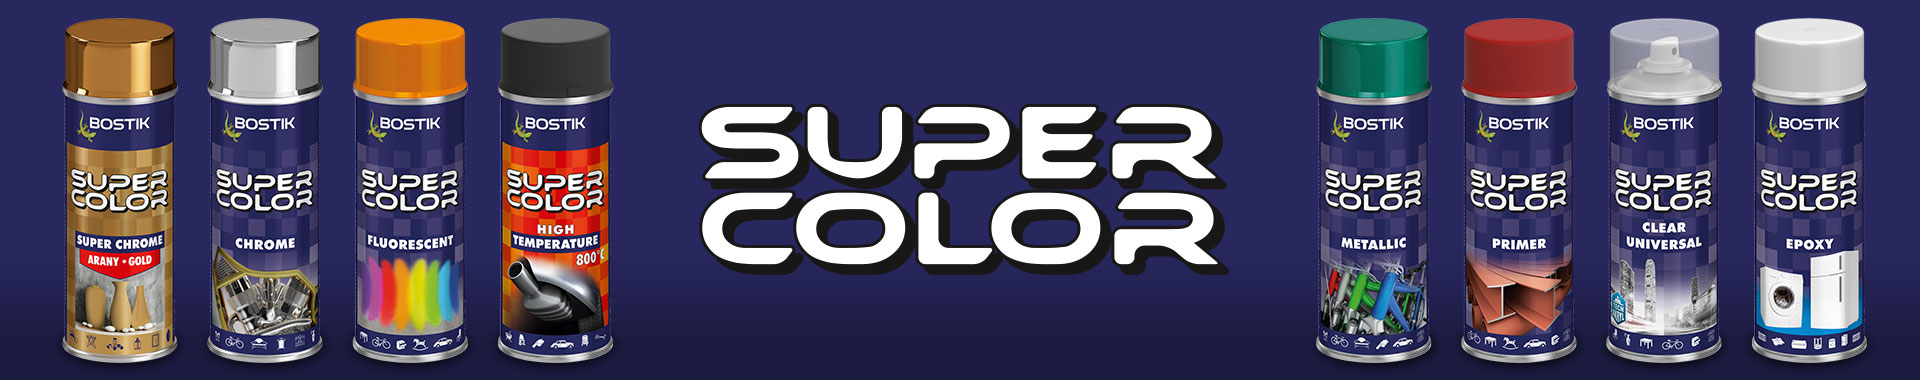 Bostik DIY Hungary Super Color range banner image